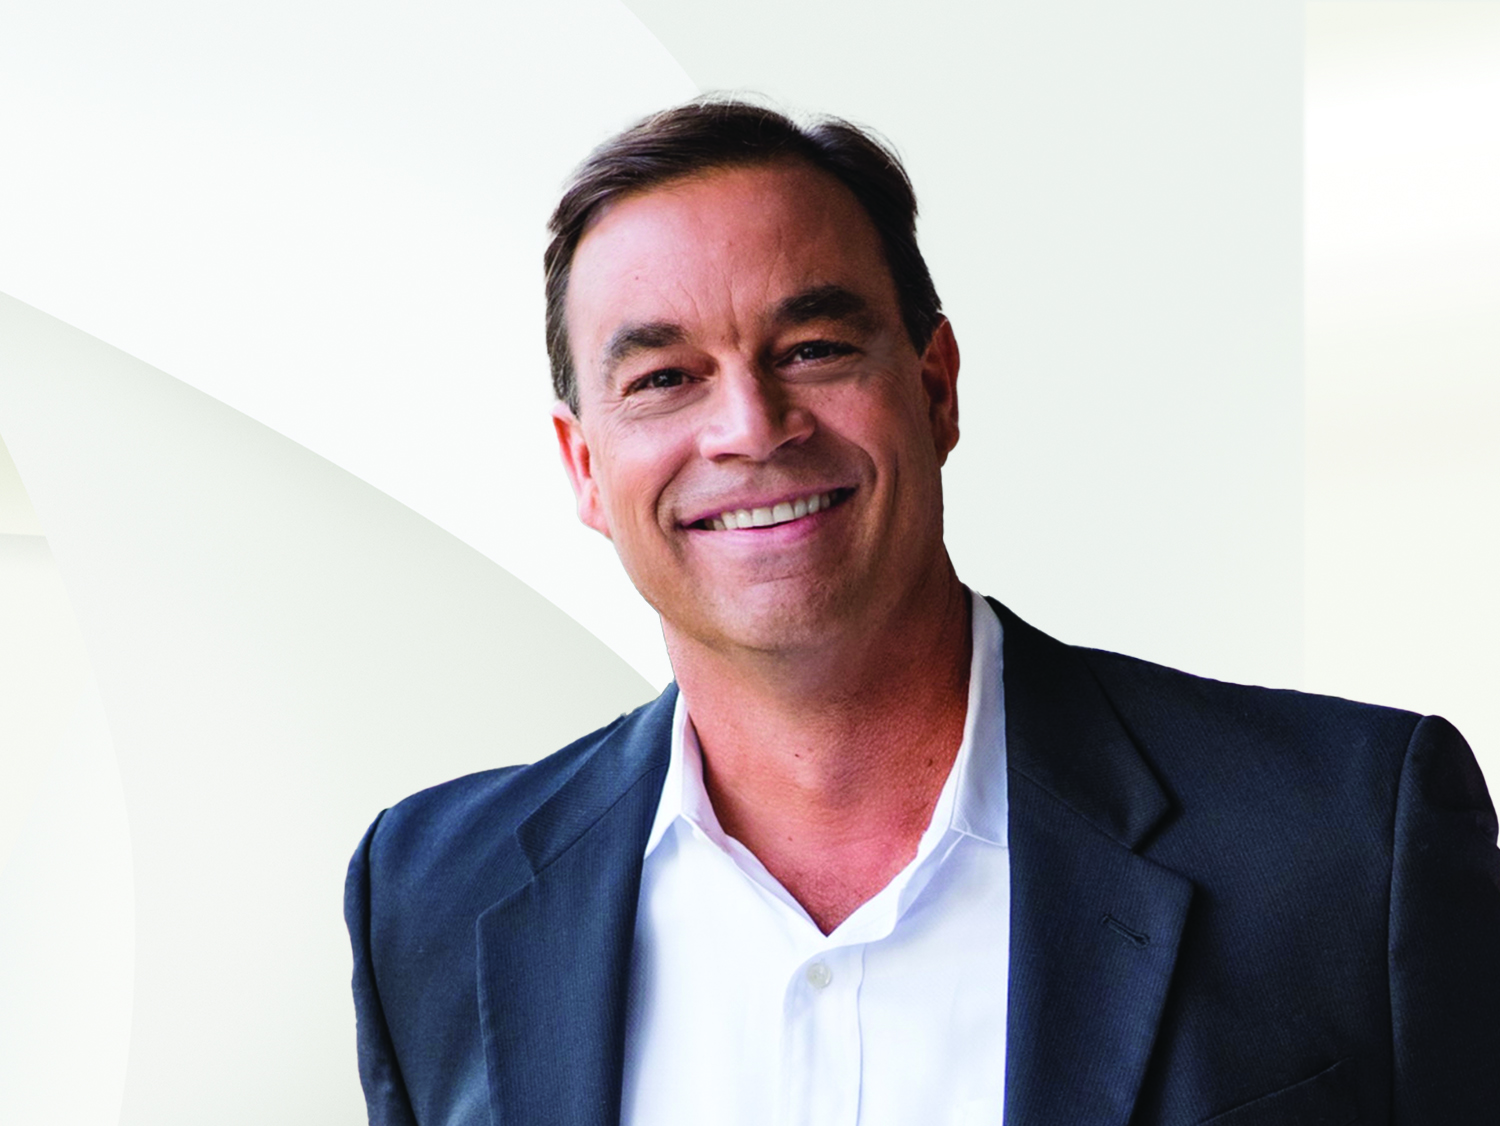 Peter Giese, CEO of Engel & Völkers MLP Florida